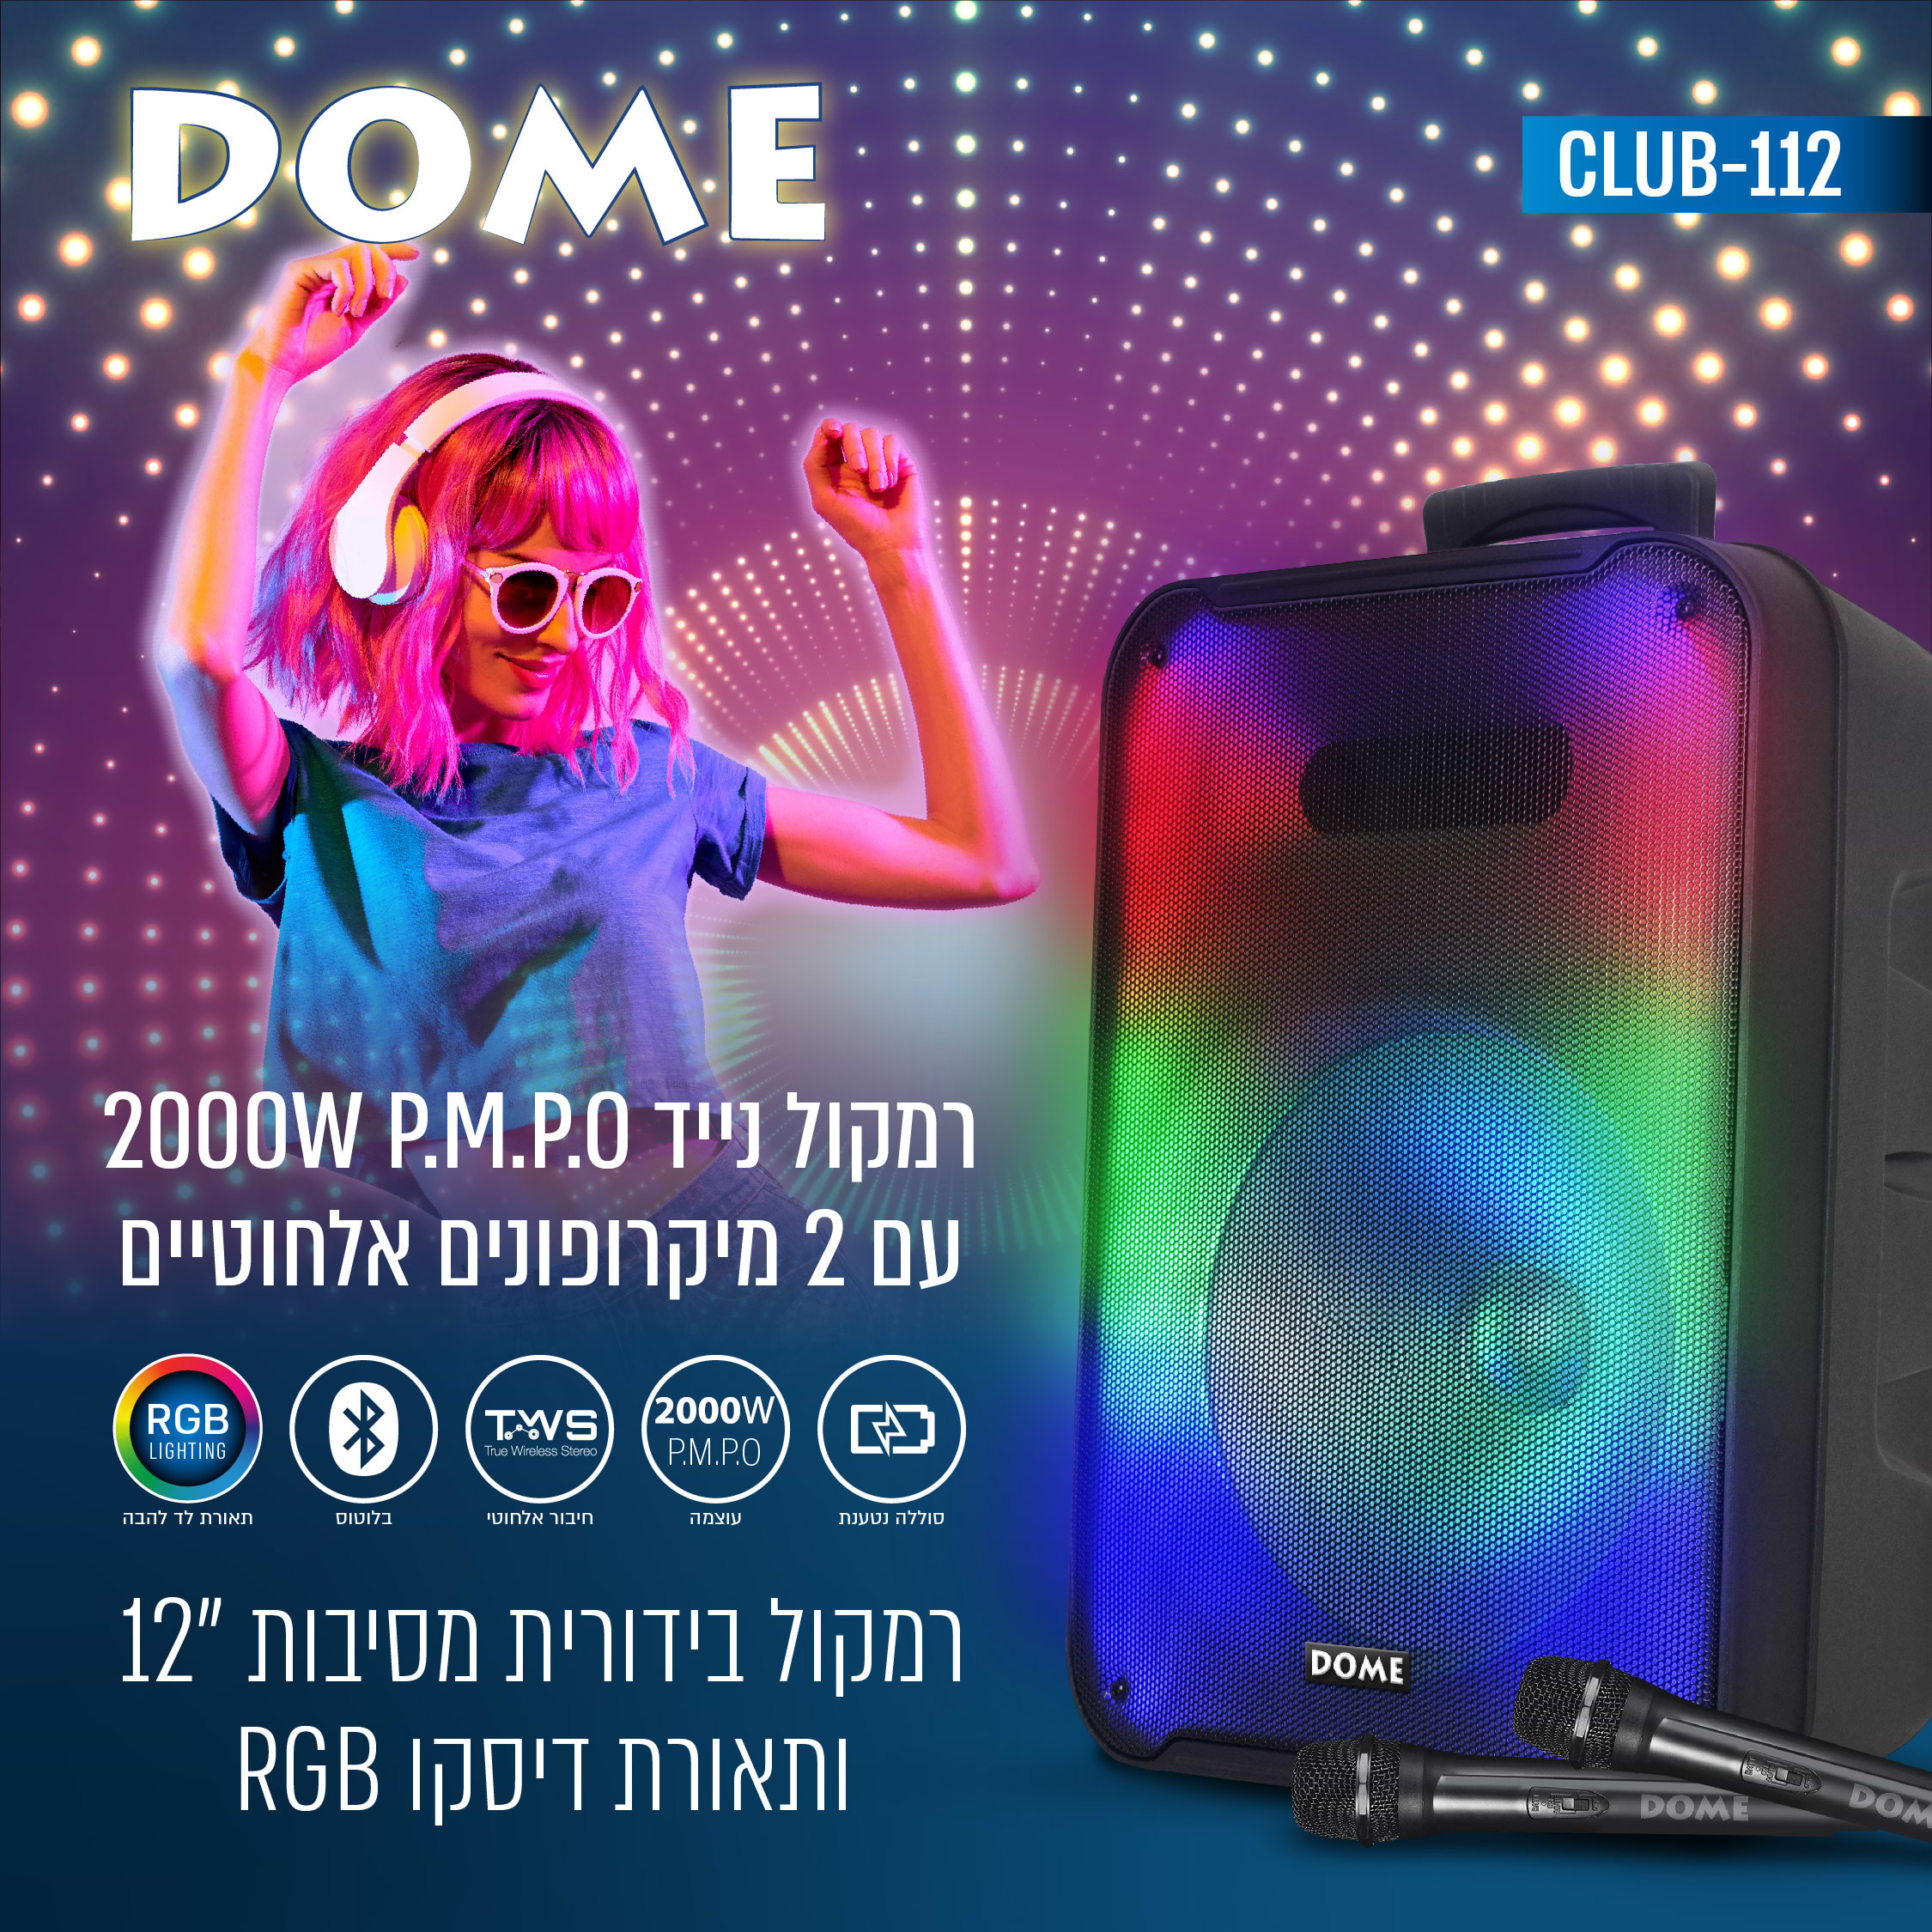 בידורית קריוקי אלחוטית עם 2 מיקרופונים אלחוטיים ותאורת לד Dome Club-112 "12 - צבע שחור שנה אחריות ע"י היבואן הרשמי